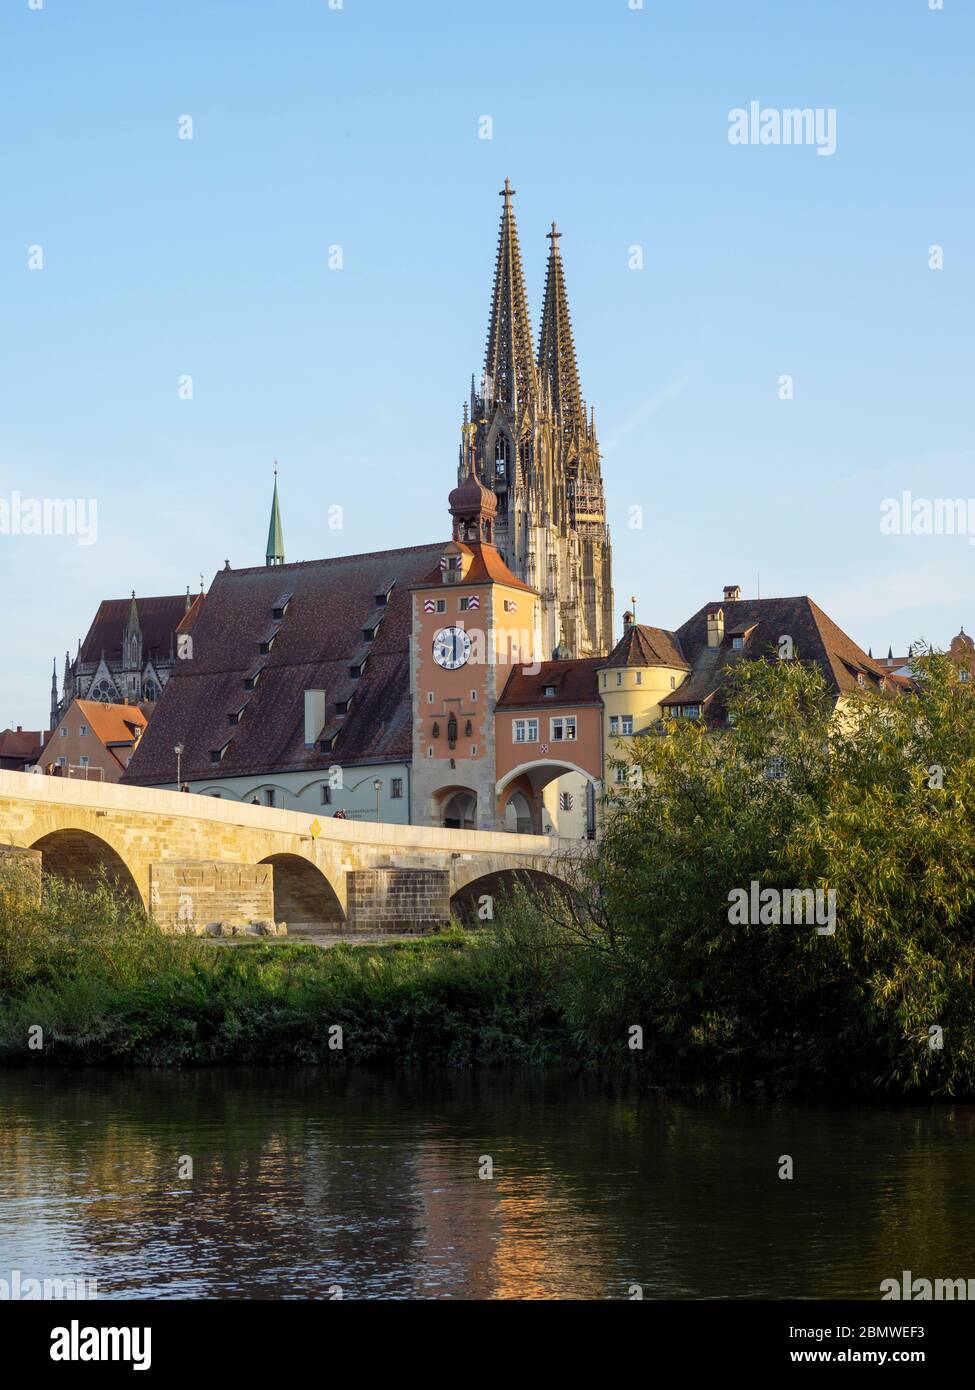 Steinerne Brücke, Donau, Altstadt von Regensburg mit Dom, UNESCO Welterbe, Bayern, Deutschland Stock Photo